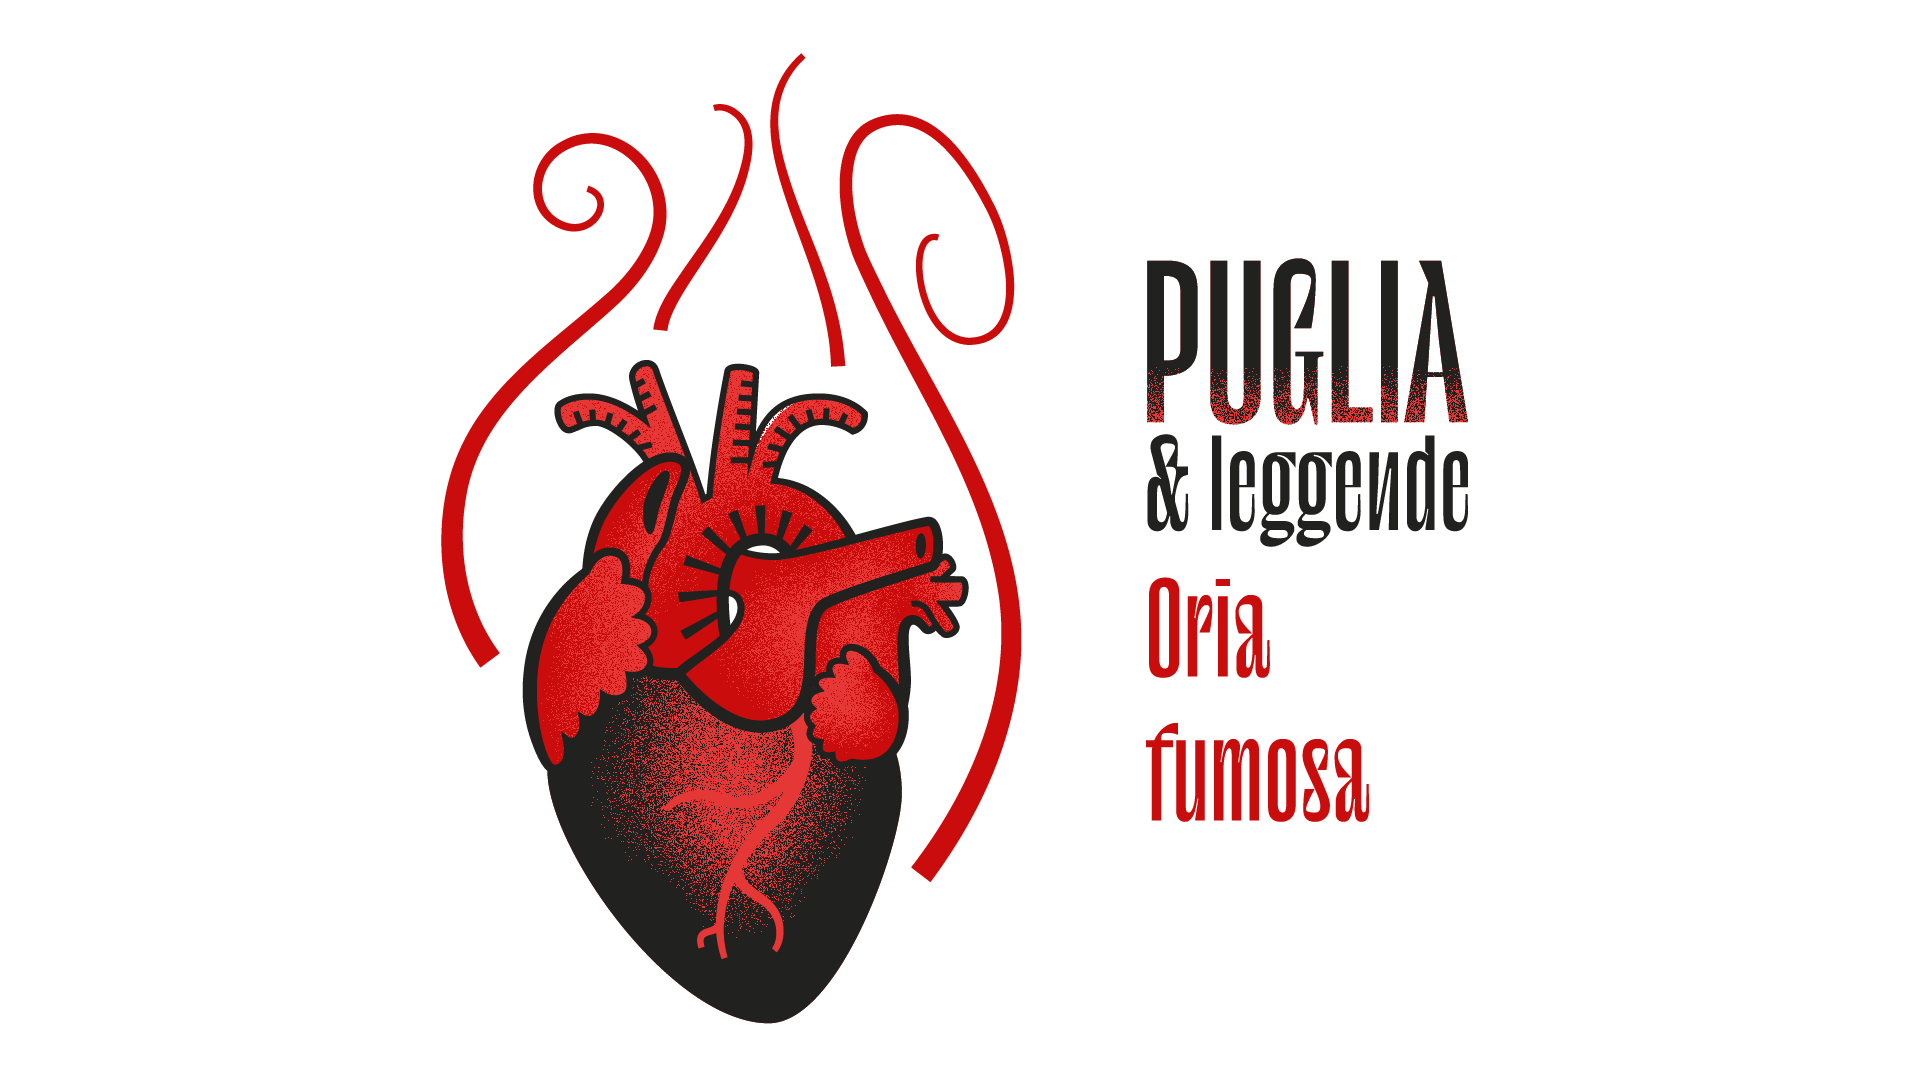 Oria fumosa - Puglia & Leggende